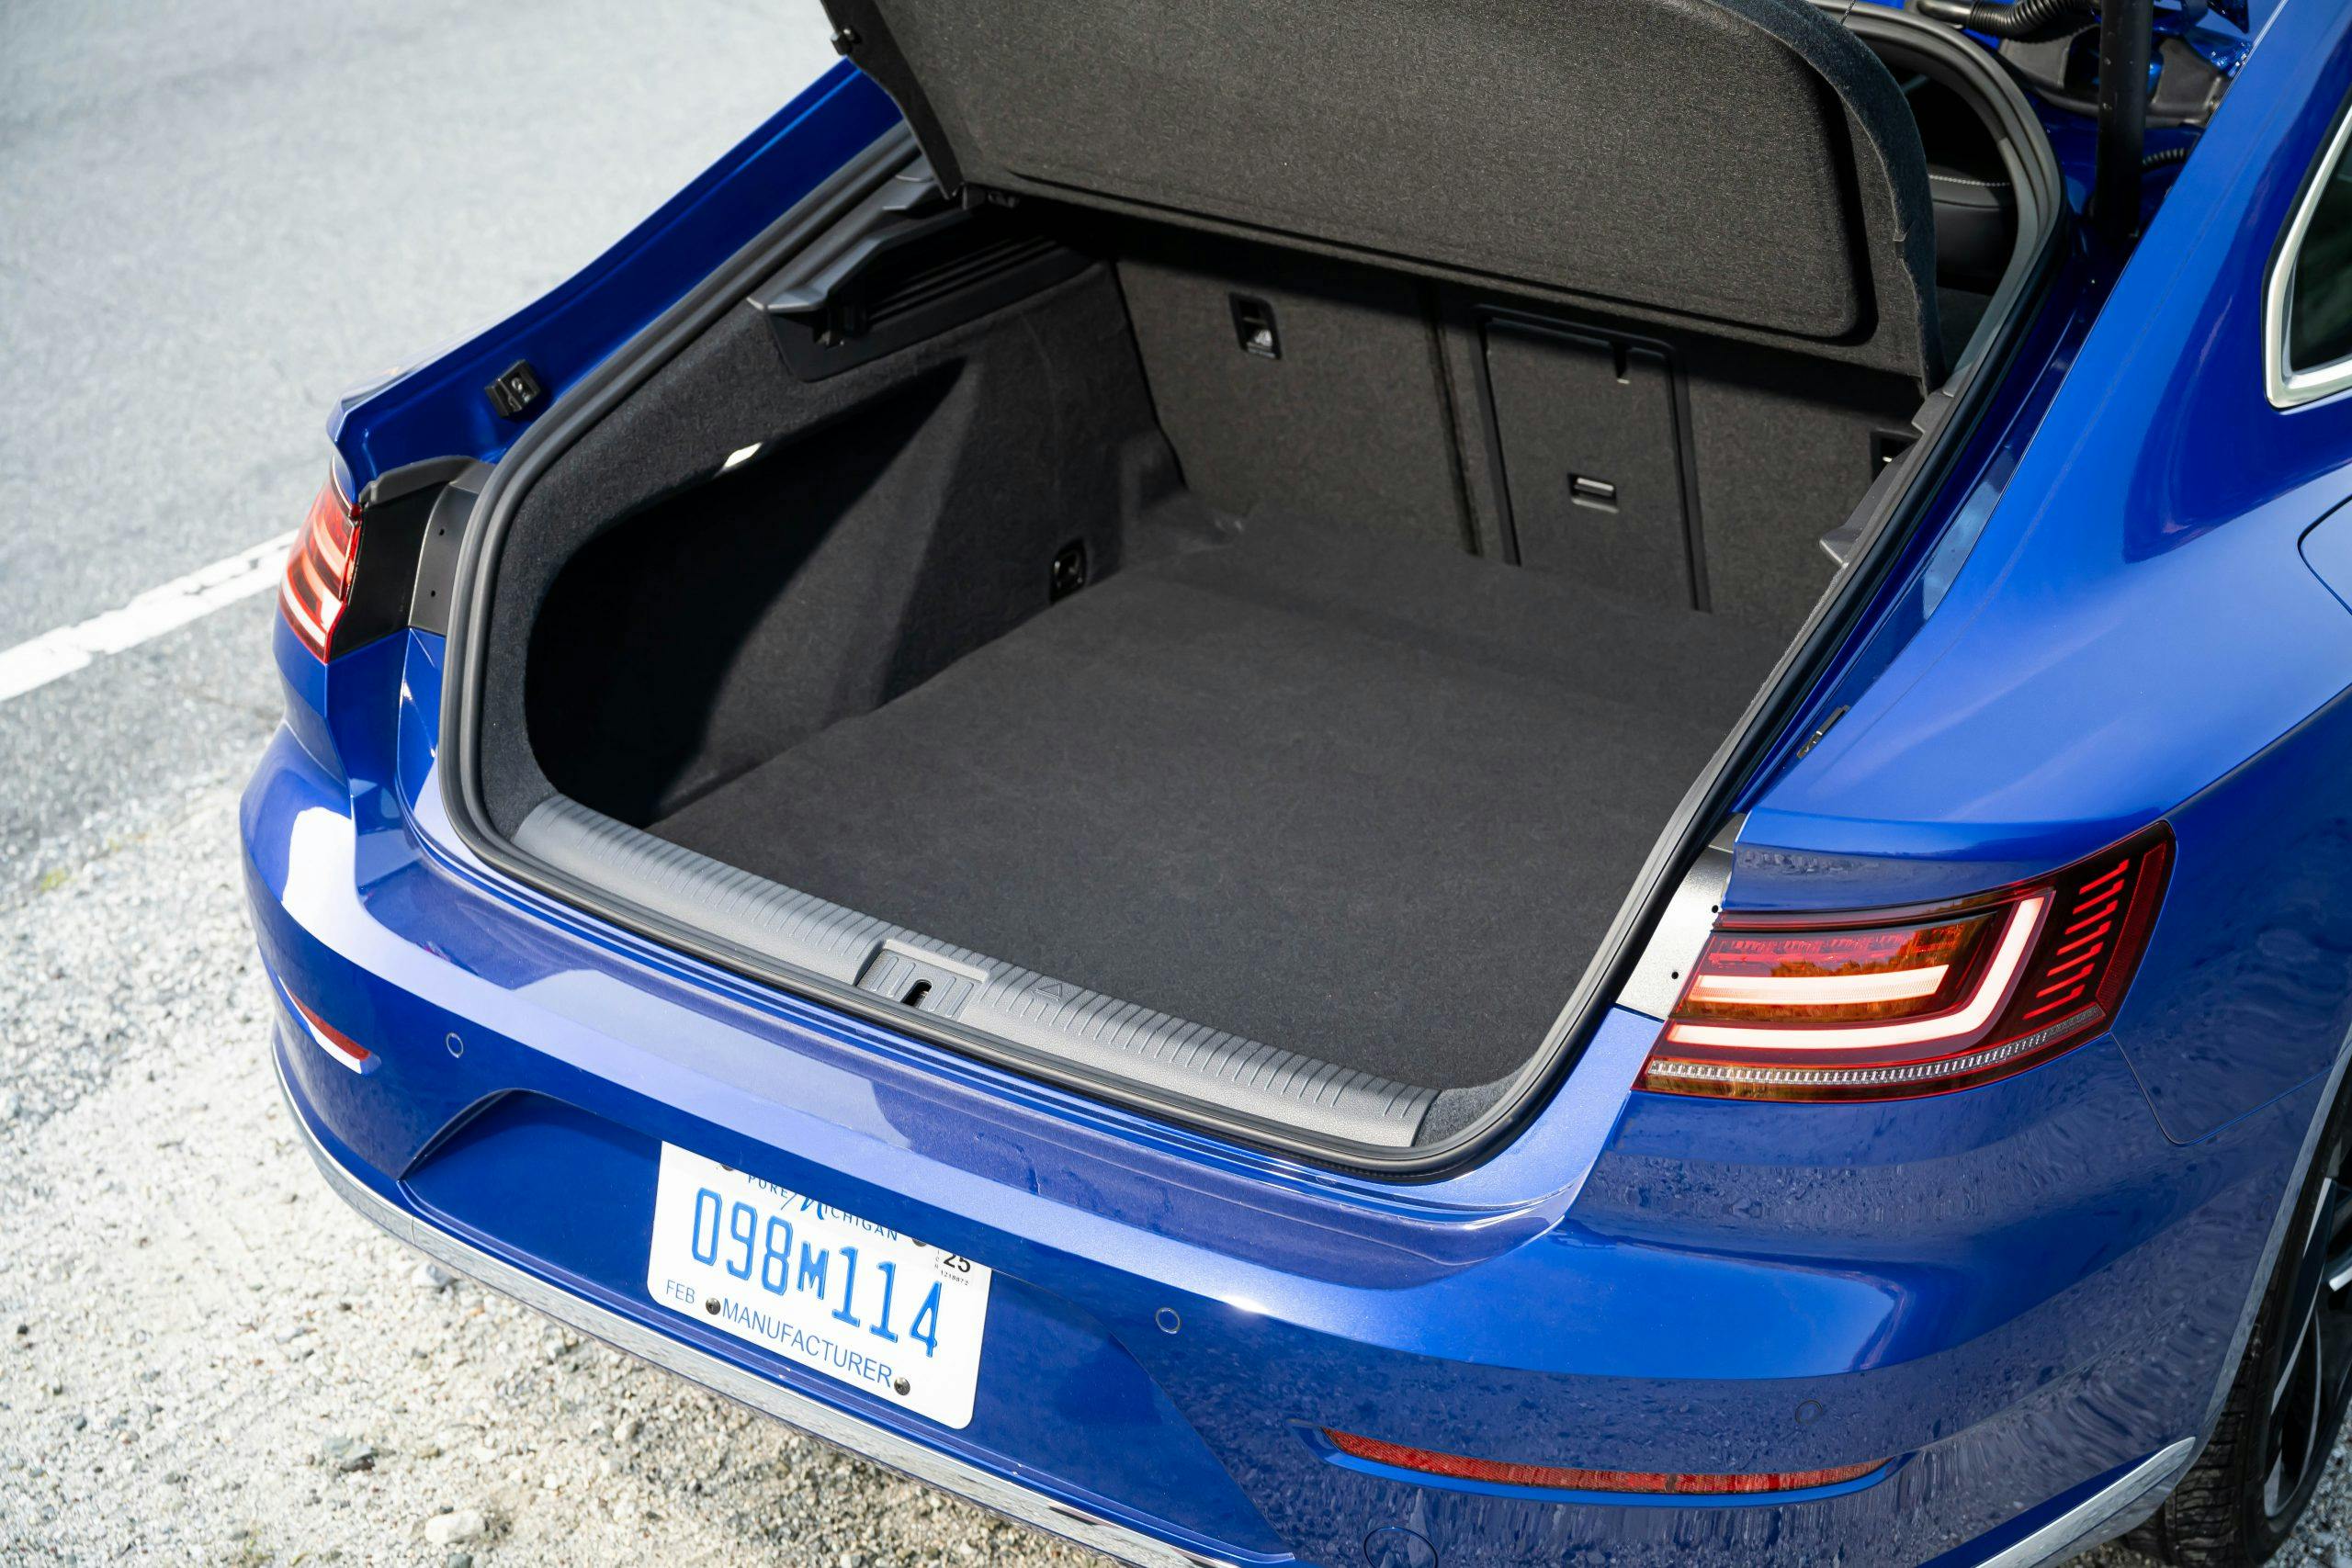 2022 VW Arteon rear trunk